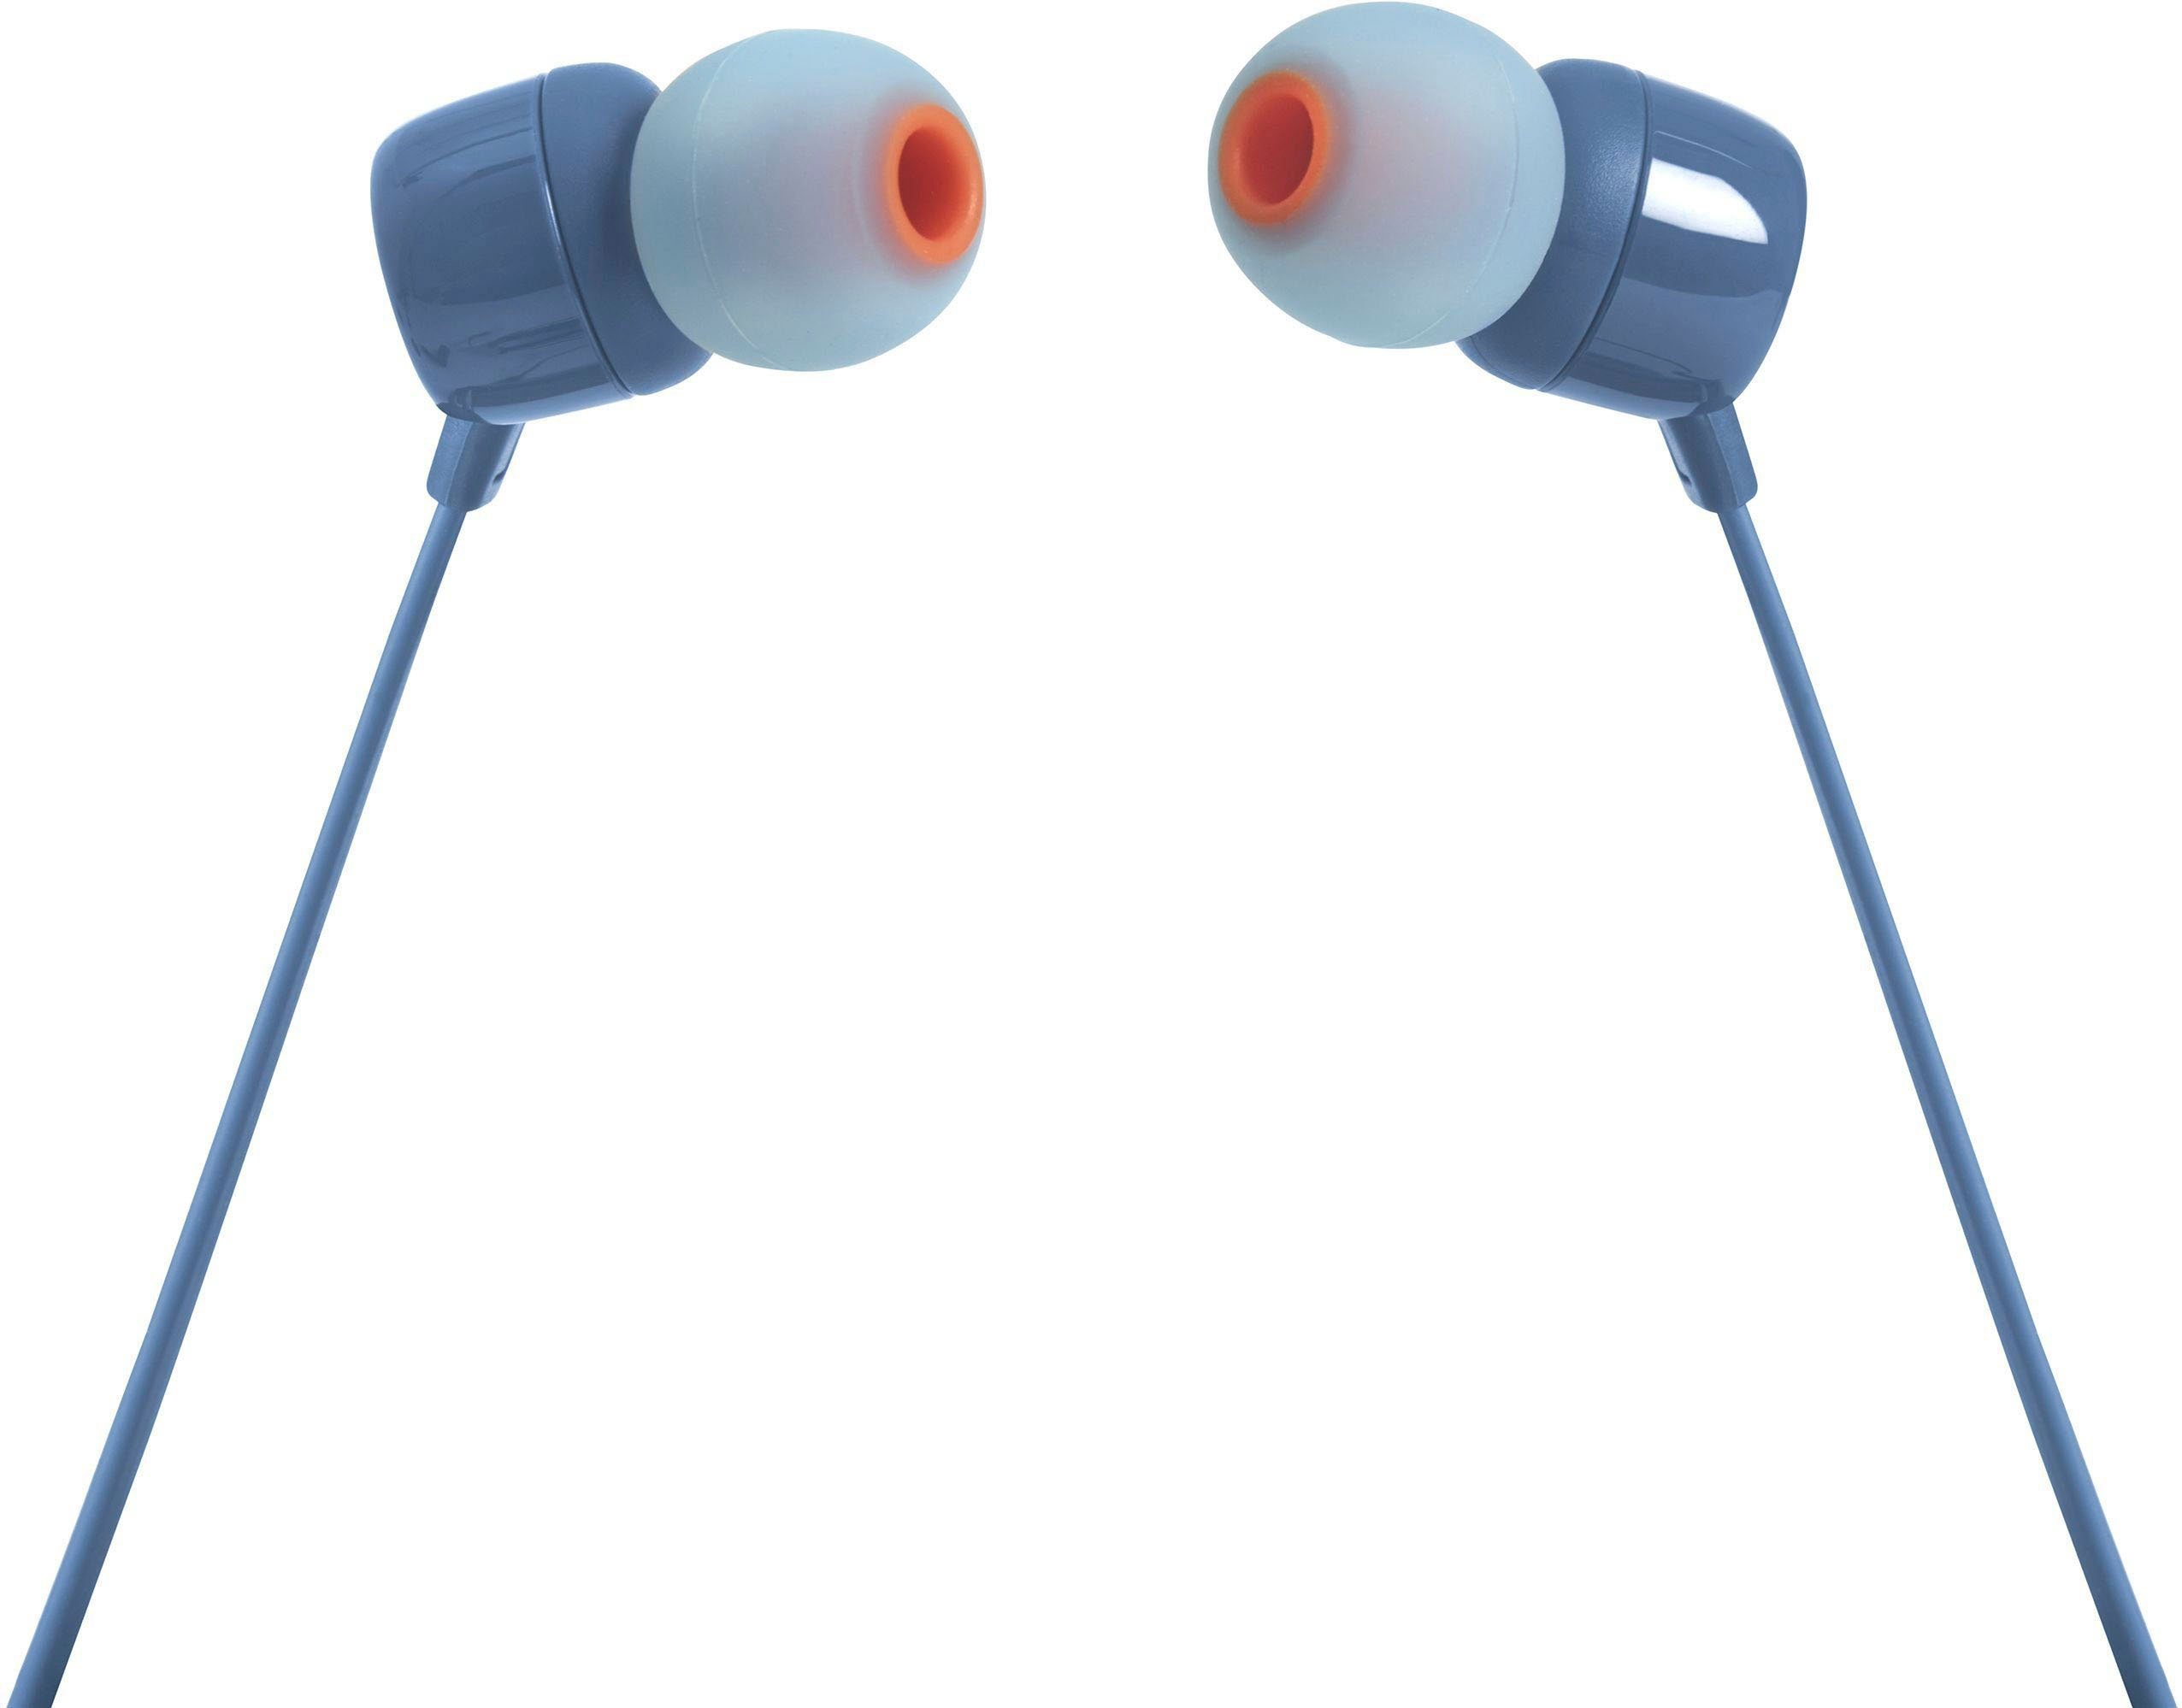 T110 blau JBL In-Ear-Kopfhörer